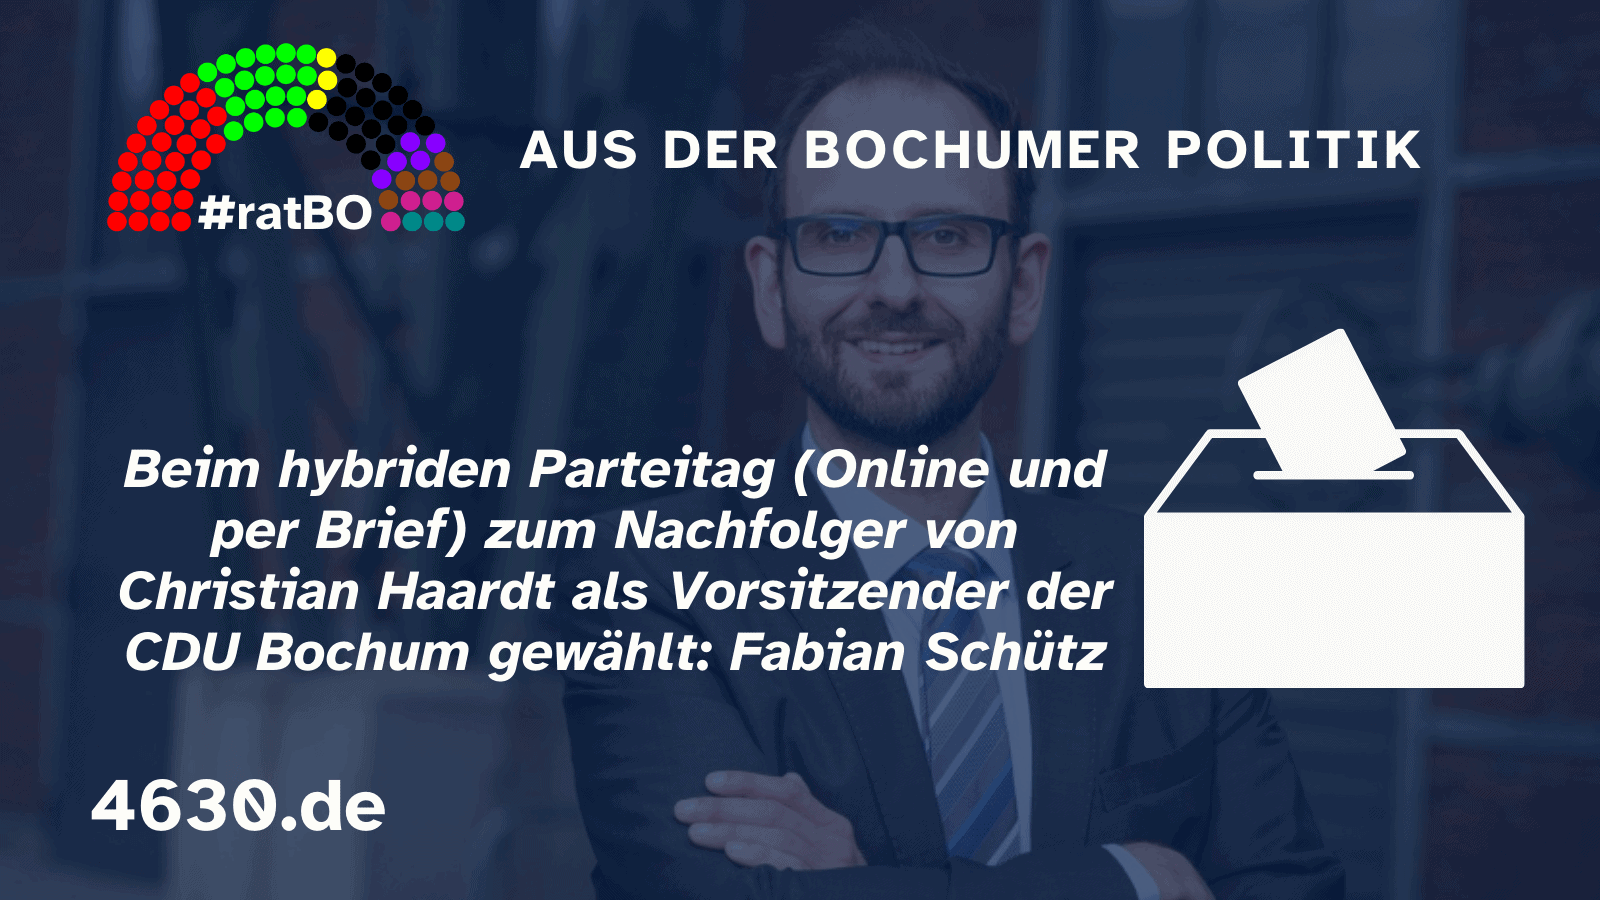 Aus der Bochumer Politik: Fabian Schütz neuer Vorsitzender der CDU Bochum